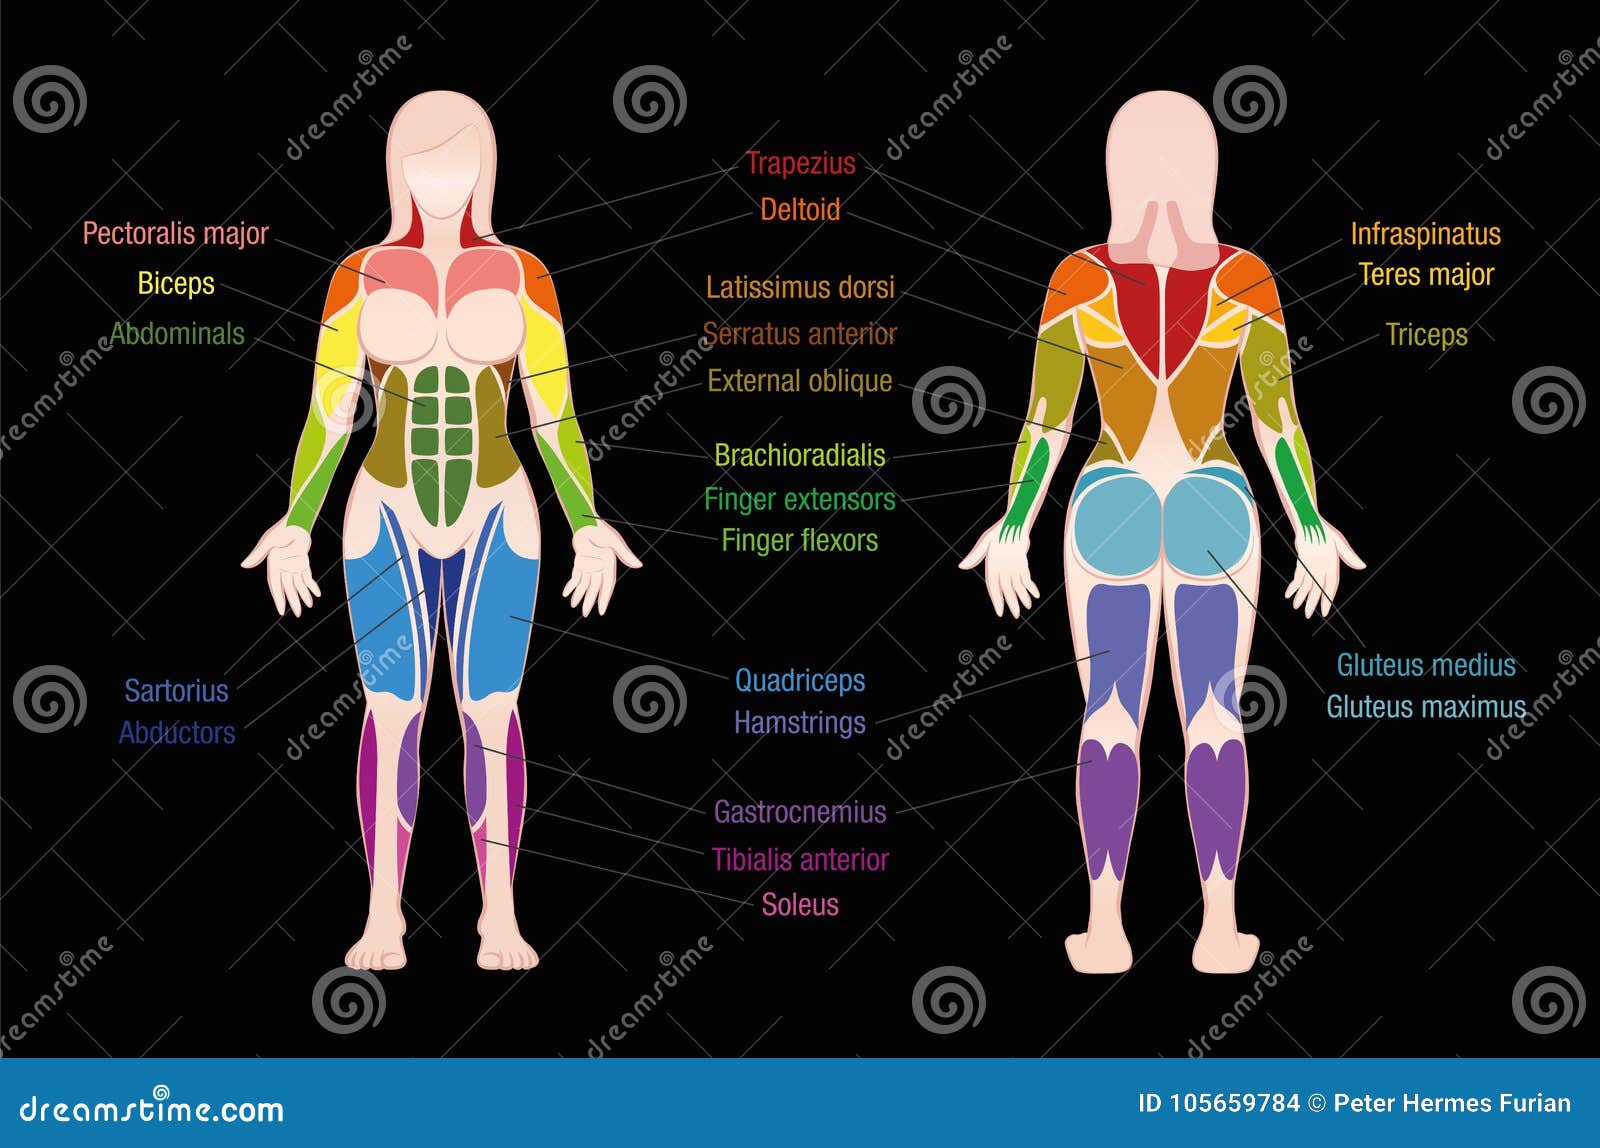 Human Anatomy Charts Free Download